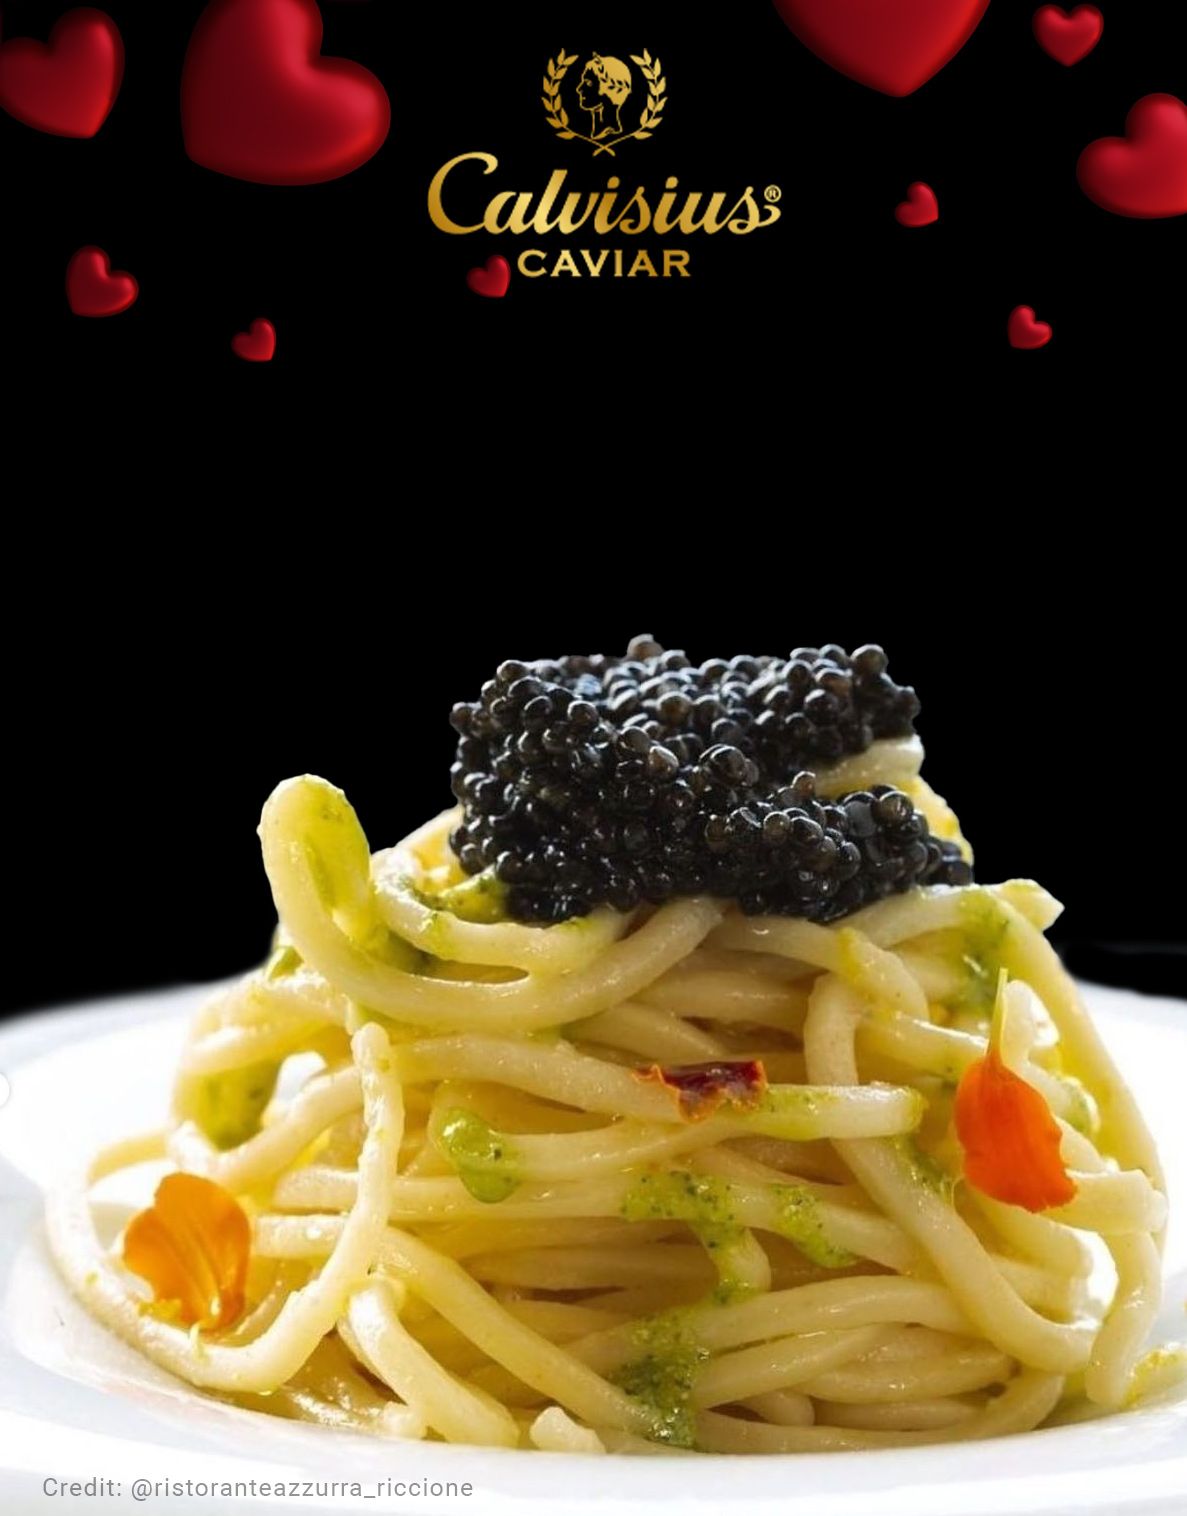 Calvisius Black Caviar